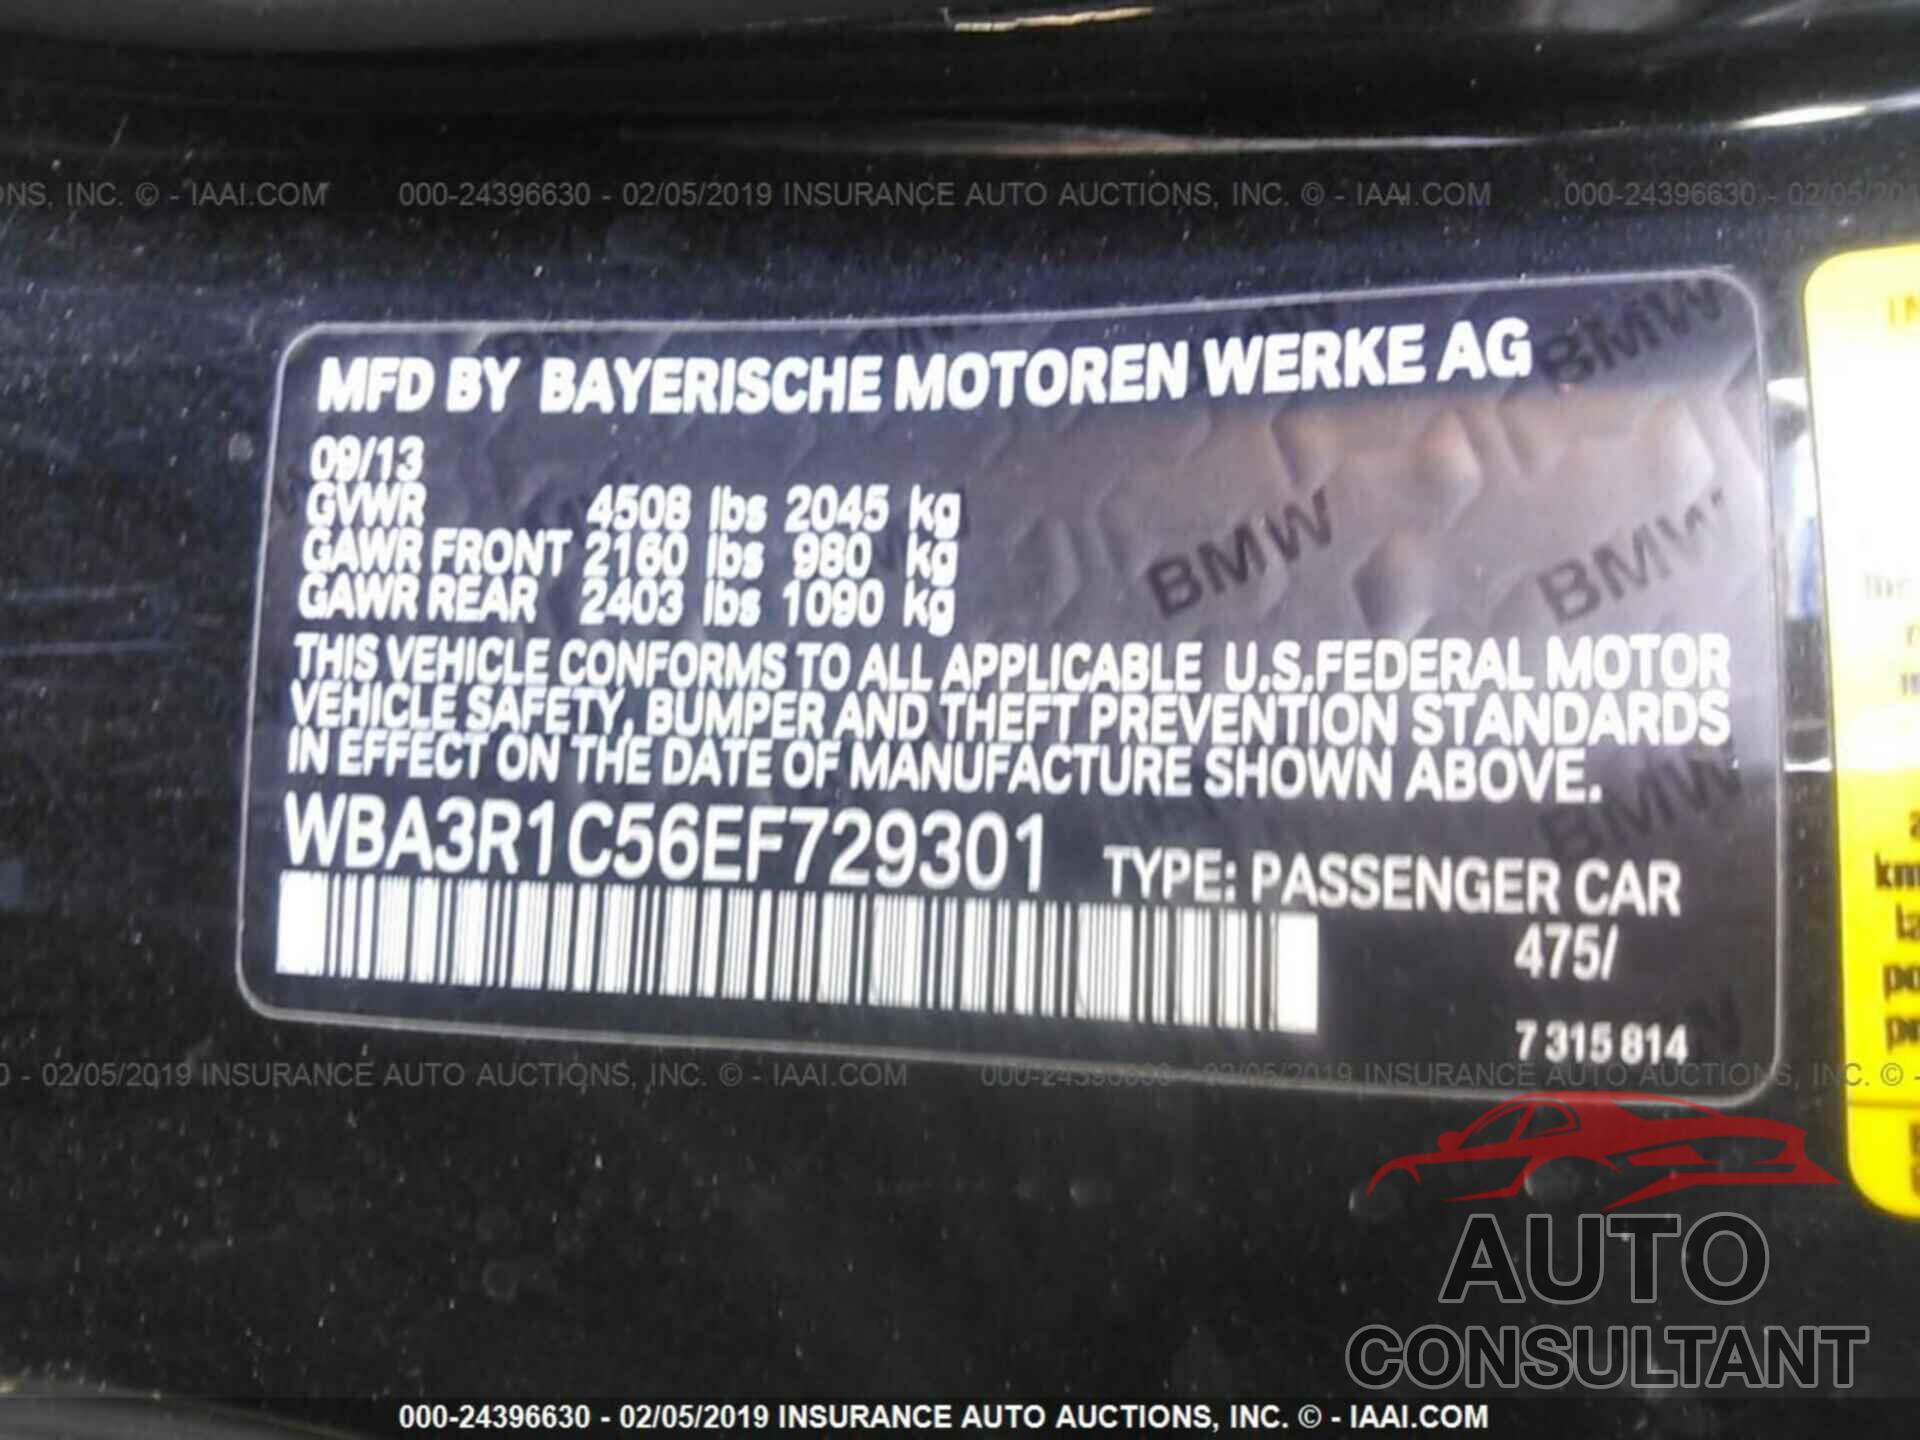 BMW 435 2014 - WBA3R1C56EF729301